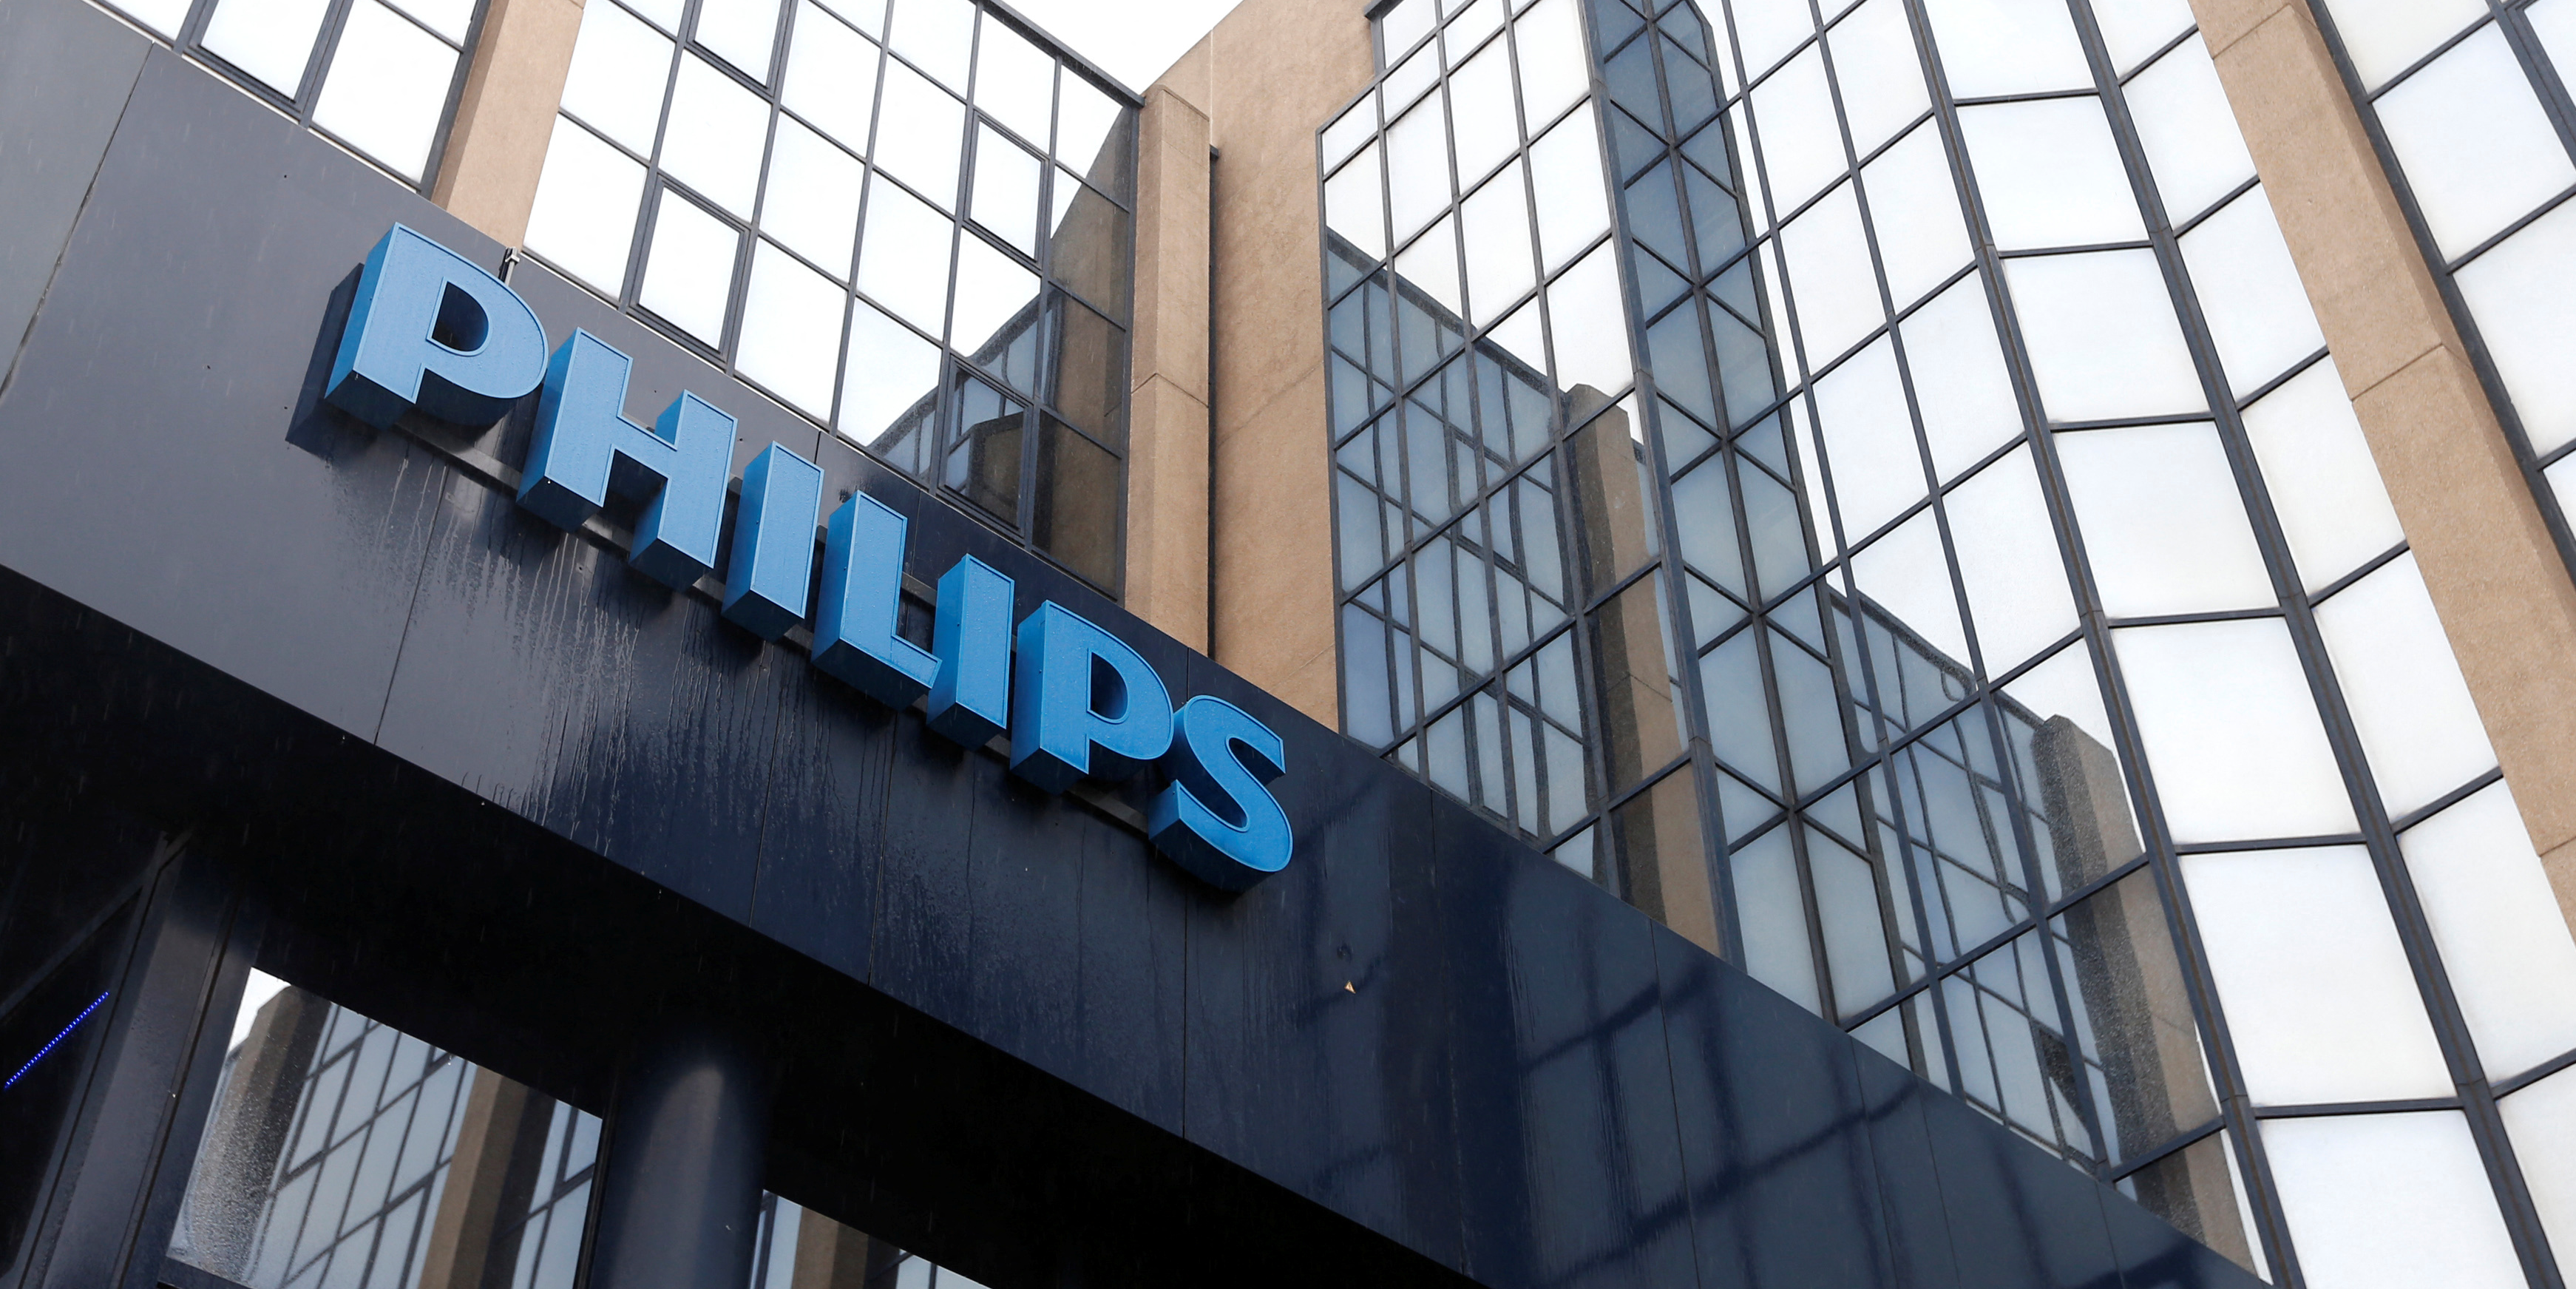 Affaire des respirateurs défectueux: aux Etats-Unis, Philips va payer 1,1 milliard de dollars aux plaignants